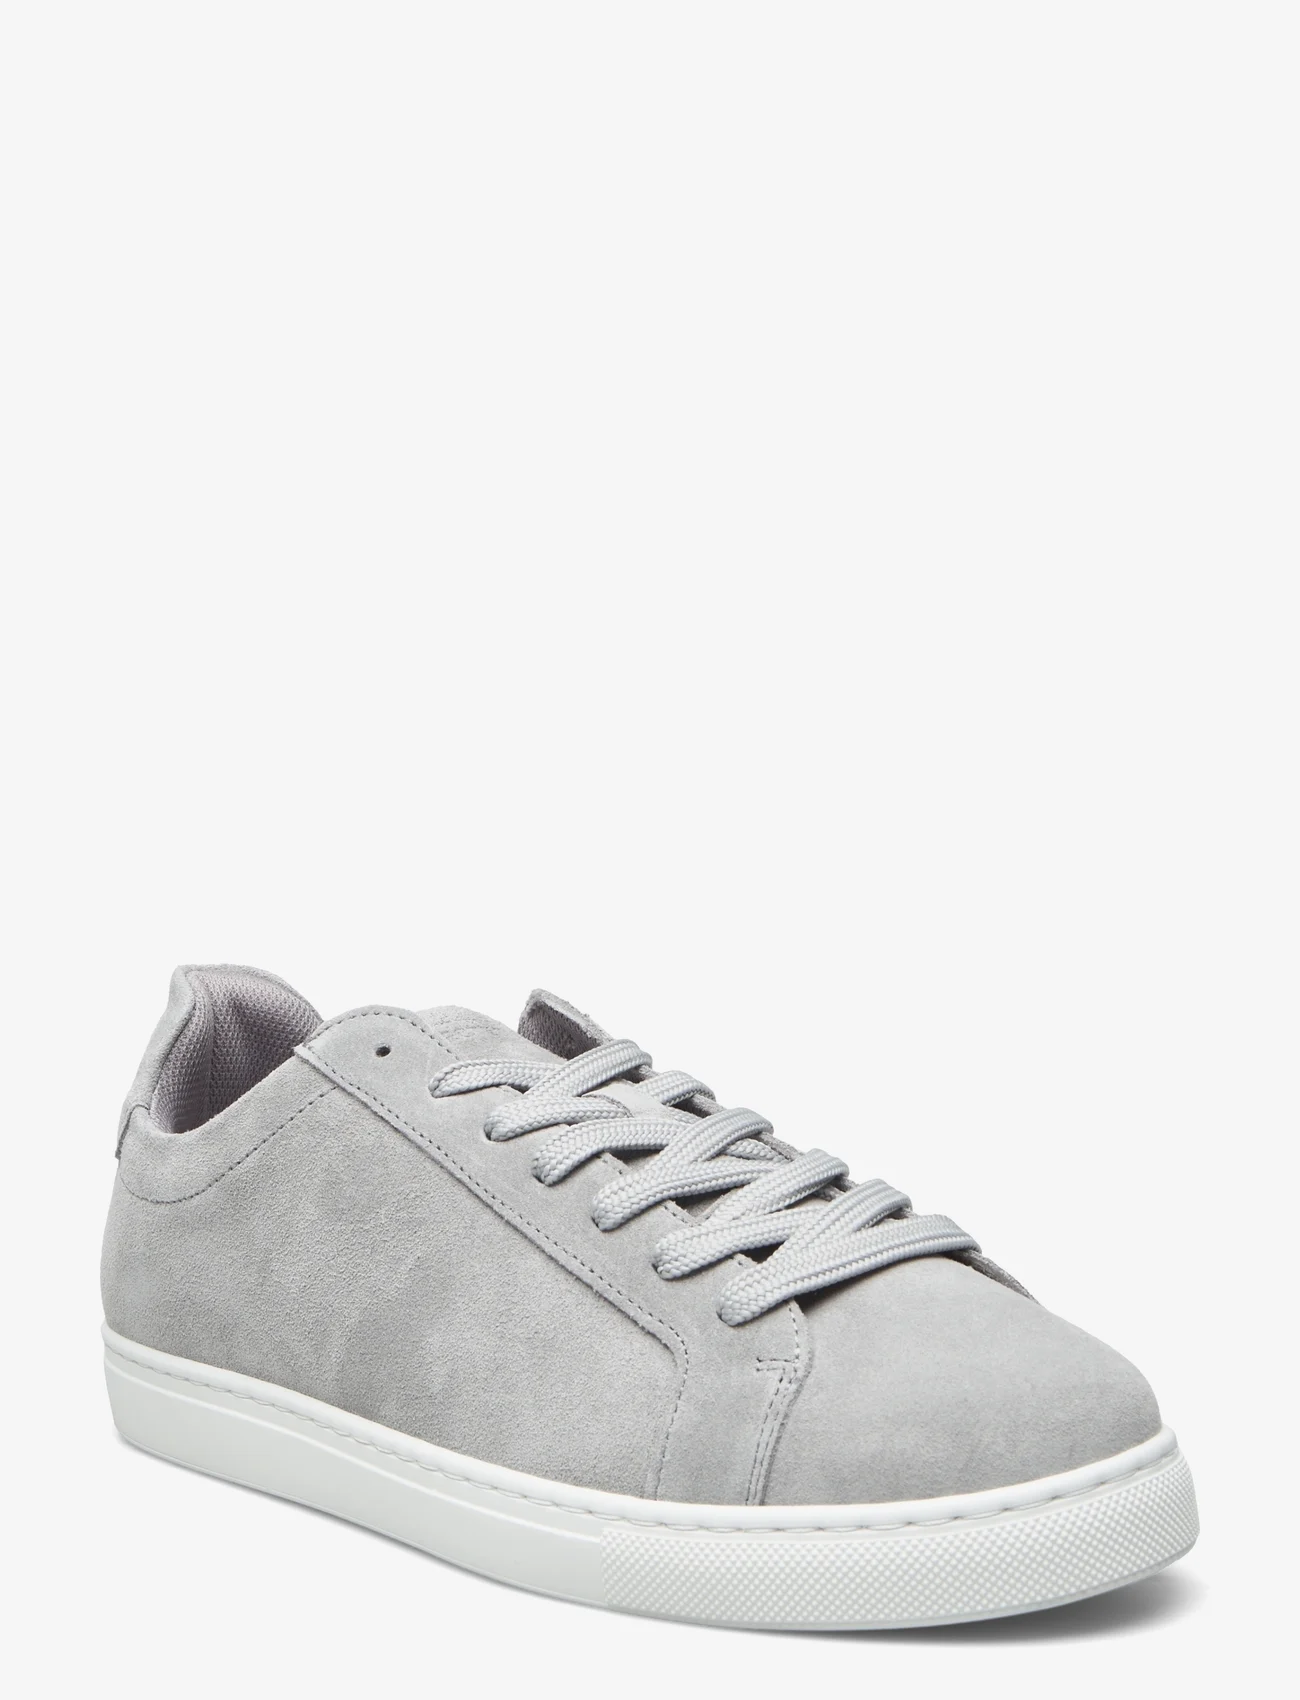 Selected Homme - SLHEVAN NEW SUEDE SNEAKER - låga sneakers - grey - 0